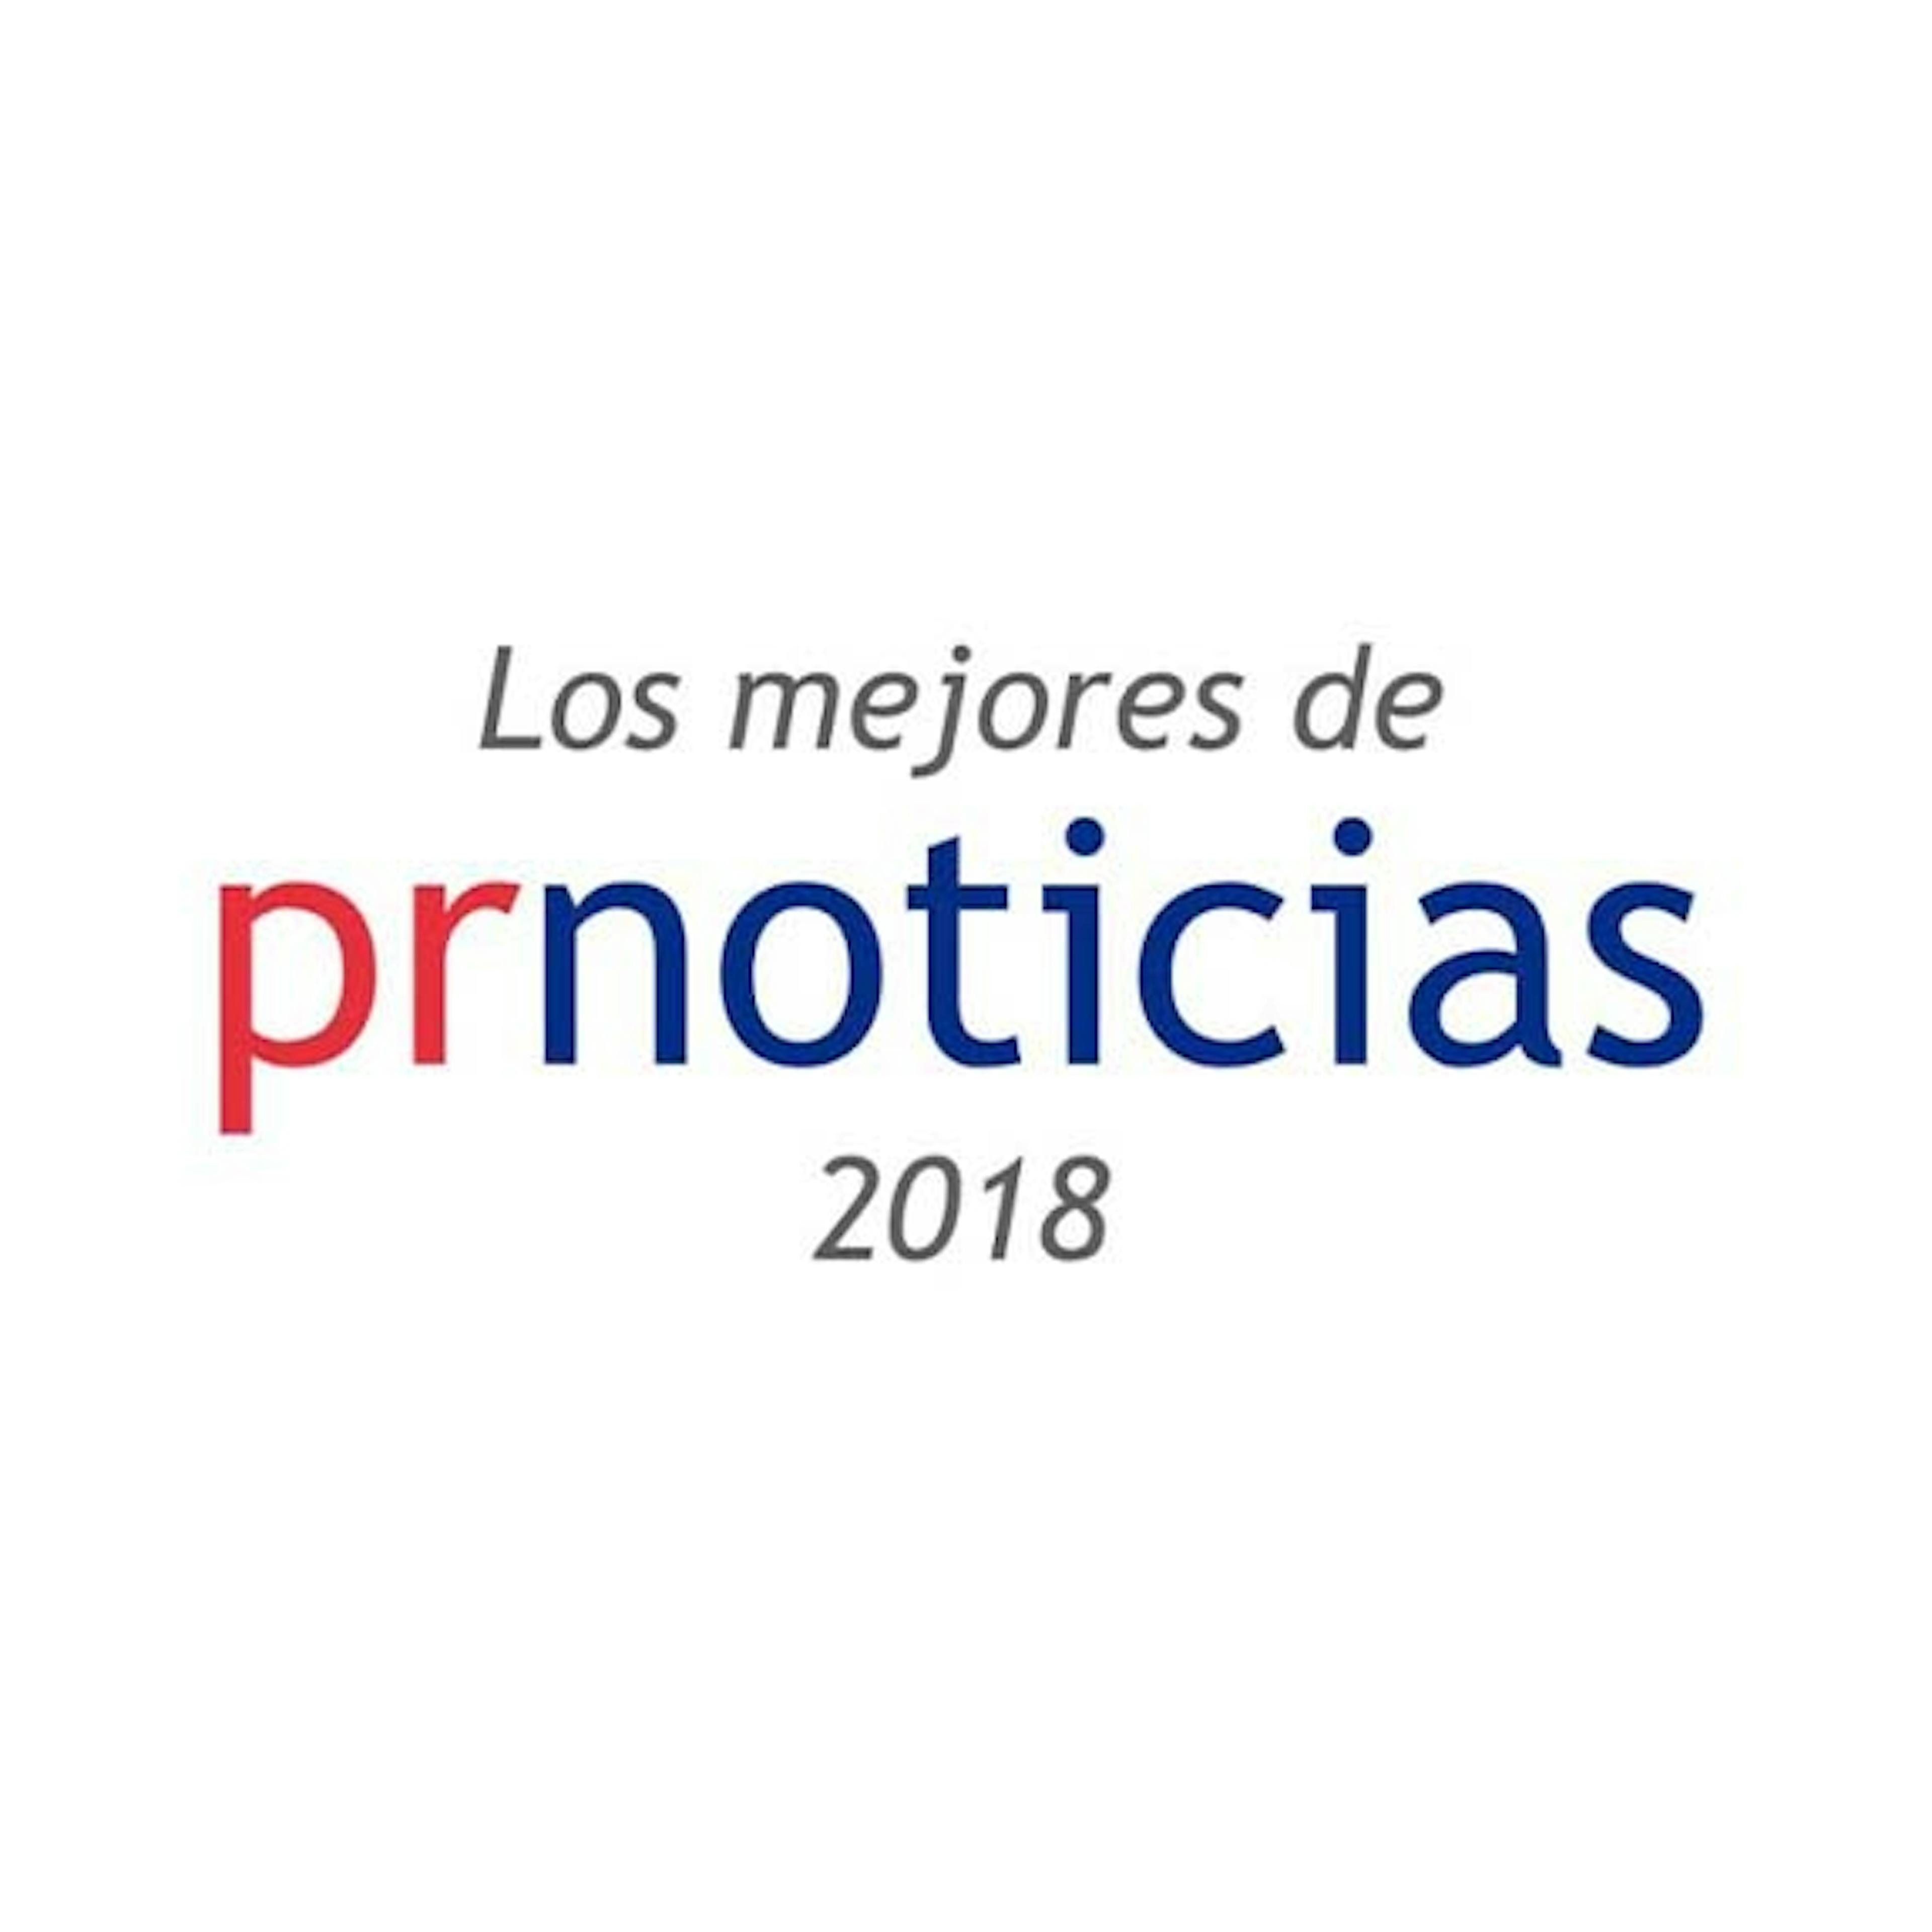 BOIRON RECIBE EL PREMIO 'MEJORES PR 2018' POR SU CAMPAÑA DE COMUNICACIÓN